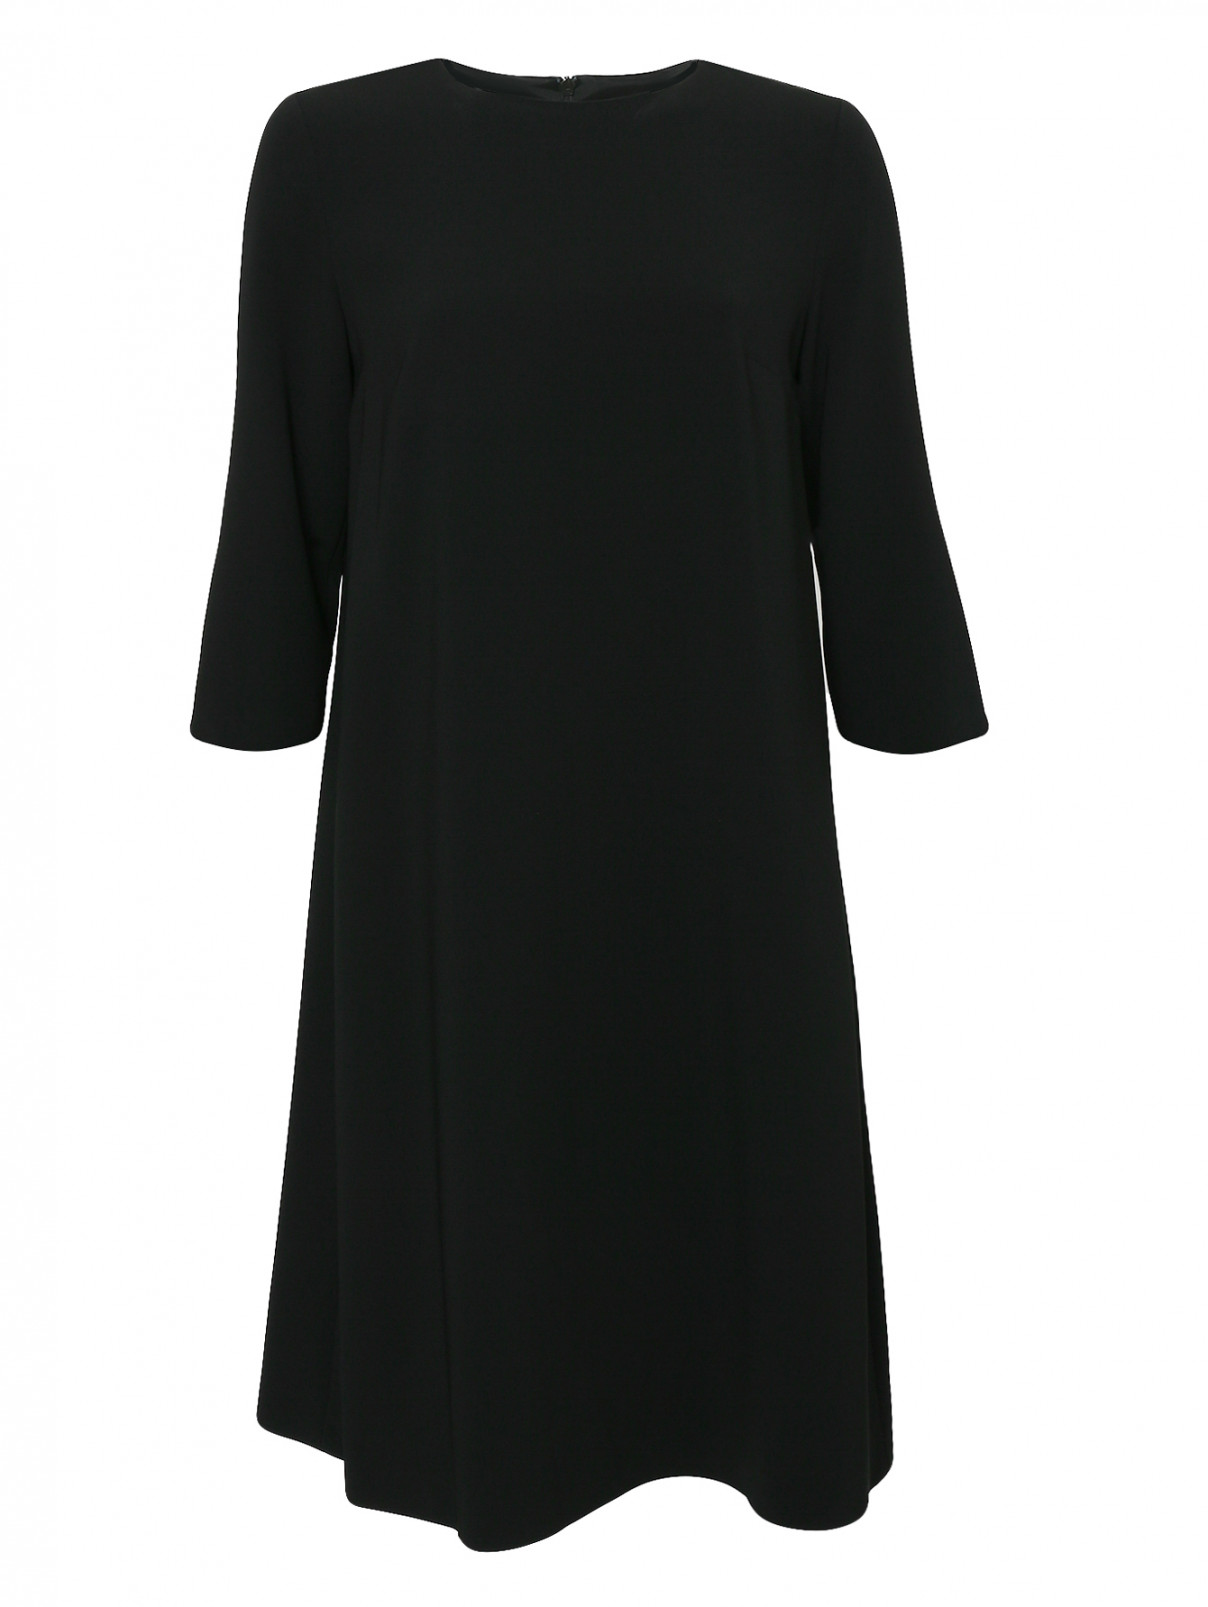 Платье свободного кроя с рукавами 3/4 Max Mara  –  Общий вид  – Цвет:  Черный